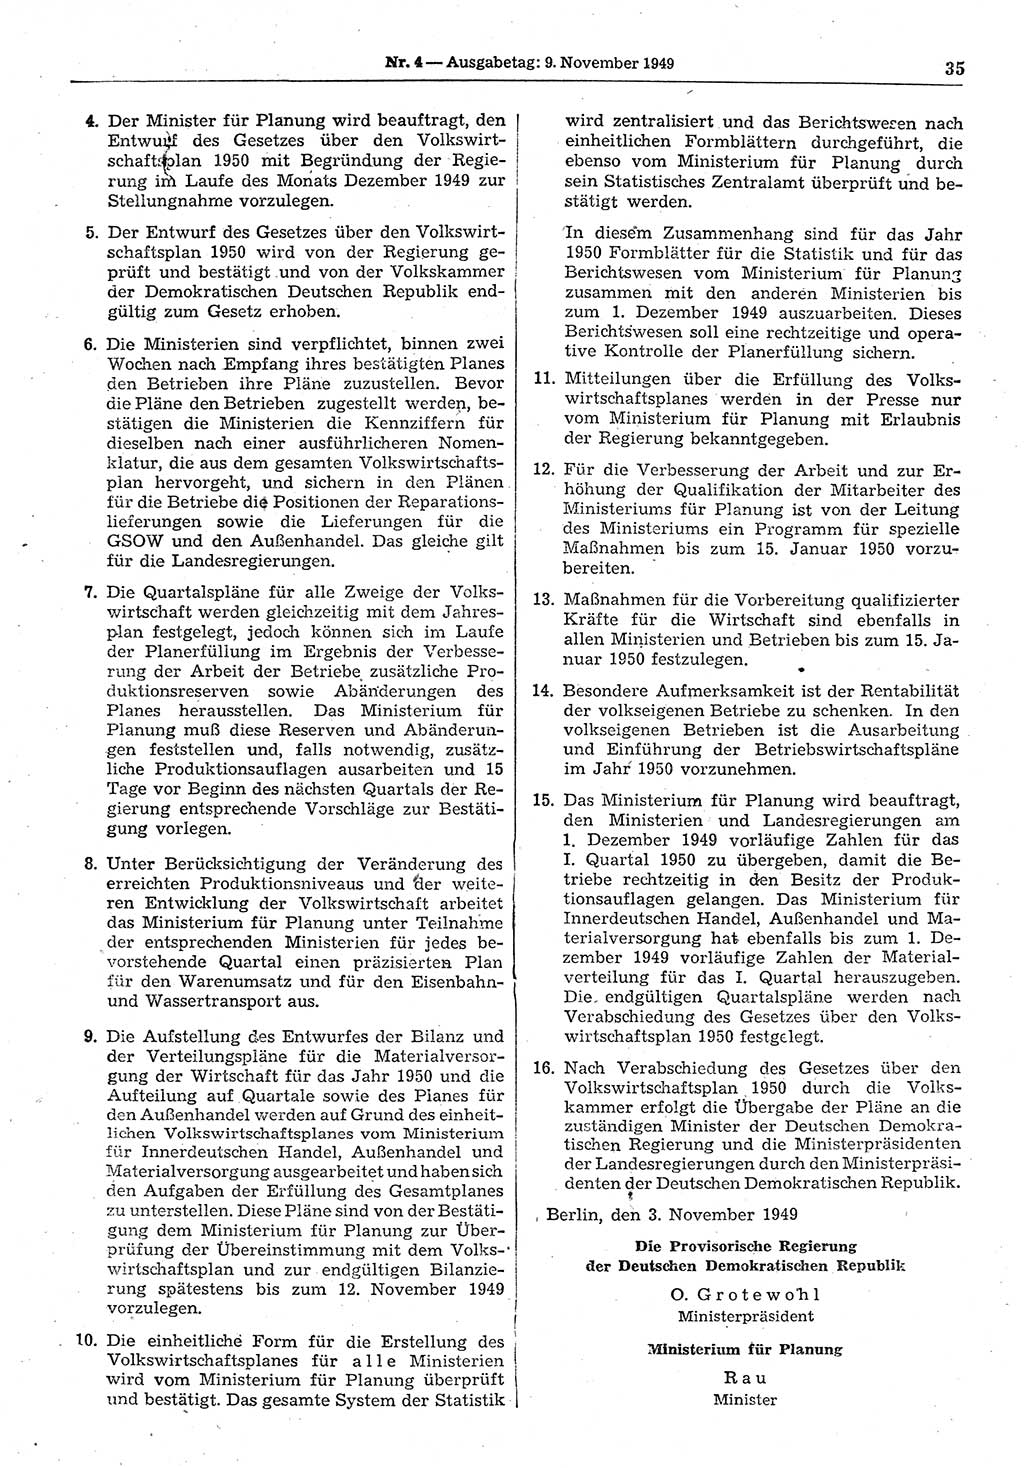 Gesetzblatt (GBl.) der Deutschen Demokratischen Republik (DDR) 1949, Seite 35 (GBl. DDR 1949, S. 35)